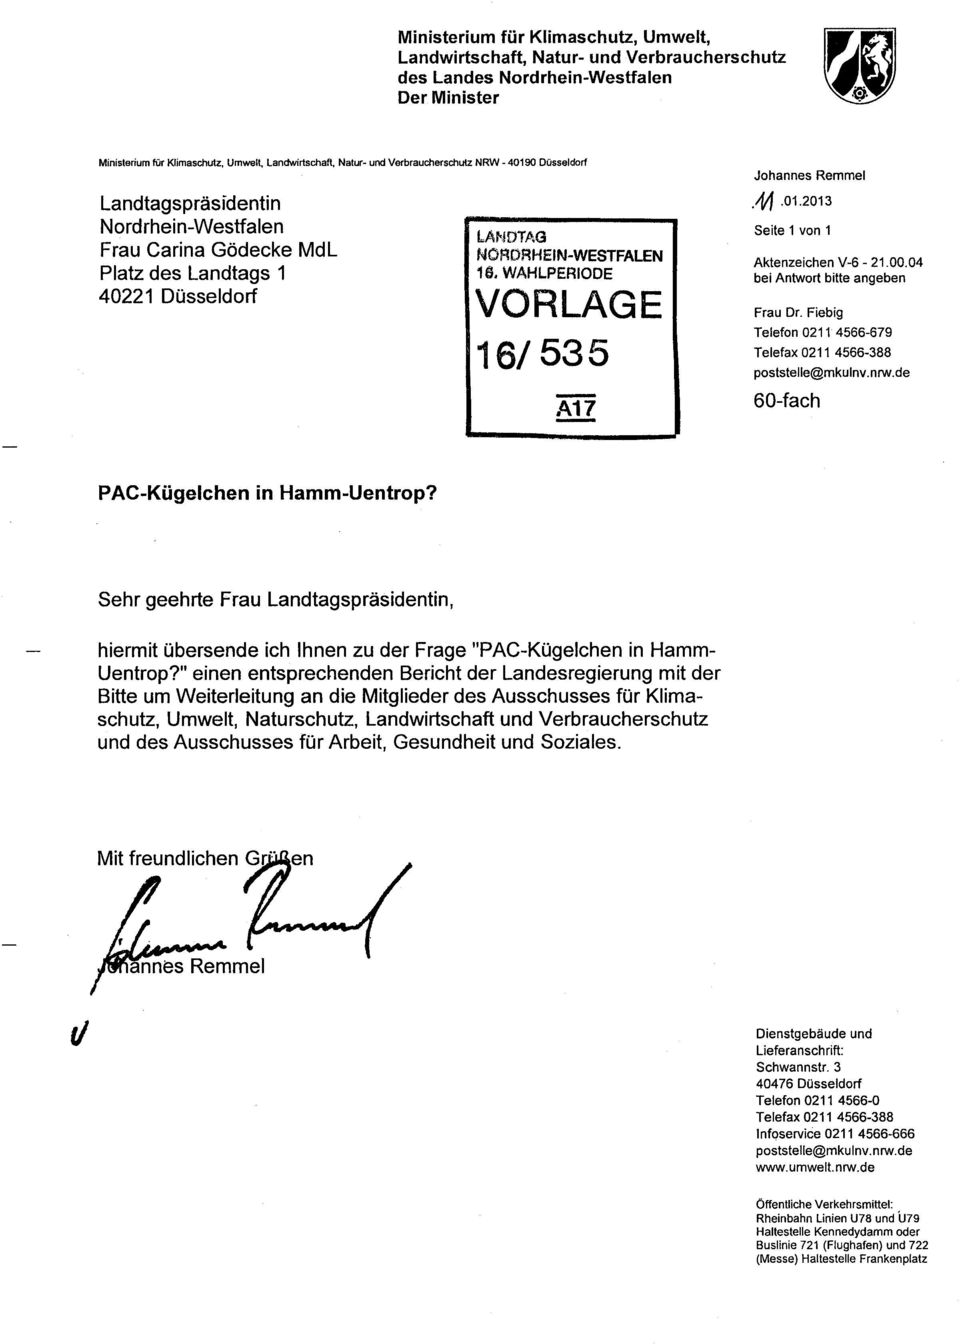 WAHLPERIODE VORLAGE 16/535 -.4017 - Johannes Remmel.11.01.2013 Seite 1 von 1 Aktenzeichen V-6-21.00.04 bei Antwort bitte angeben Frau Or.